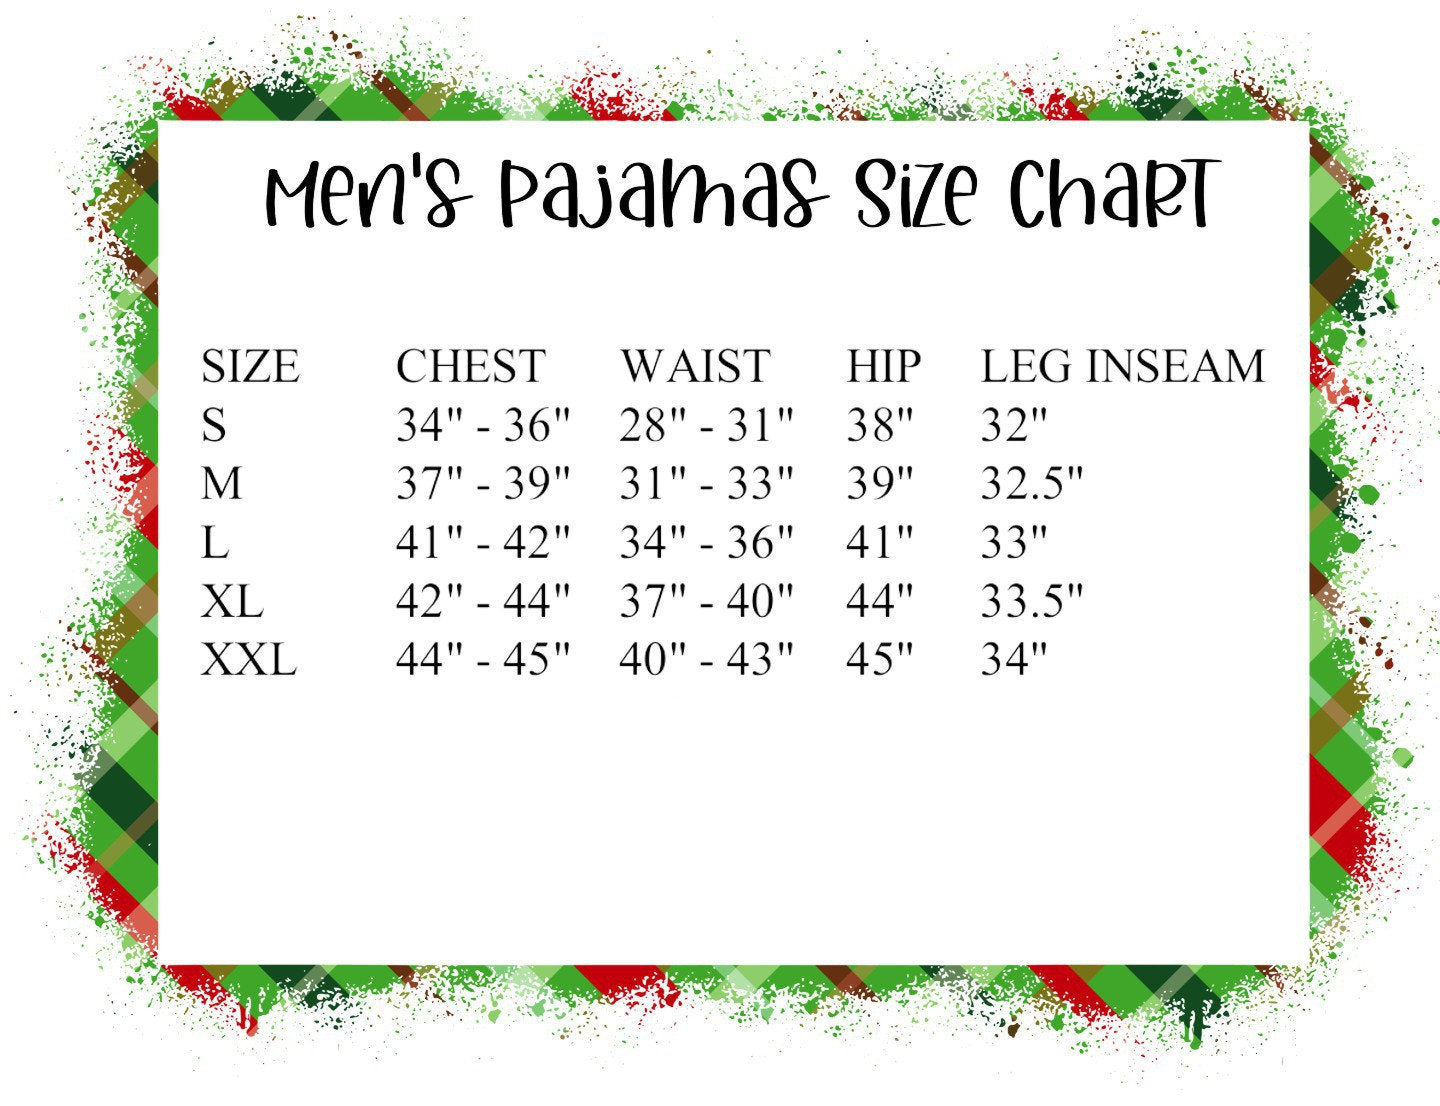 Naughty or Nice Family Christmas Pajamas - kids christmas pjs - baby christmas pjs - women's christmas jammies - Family PJs